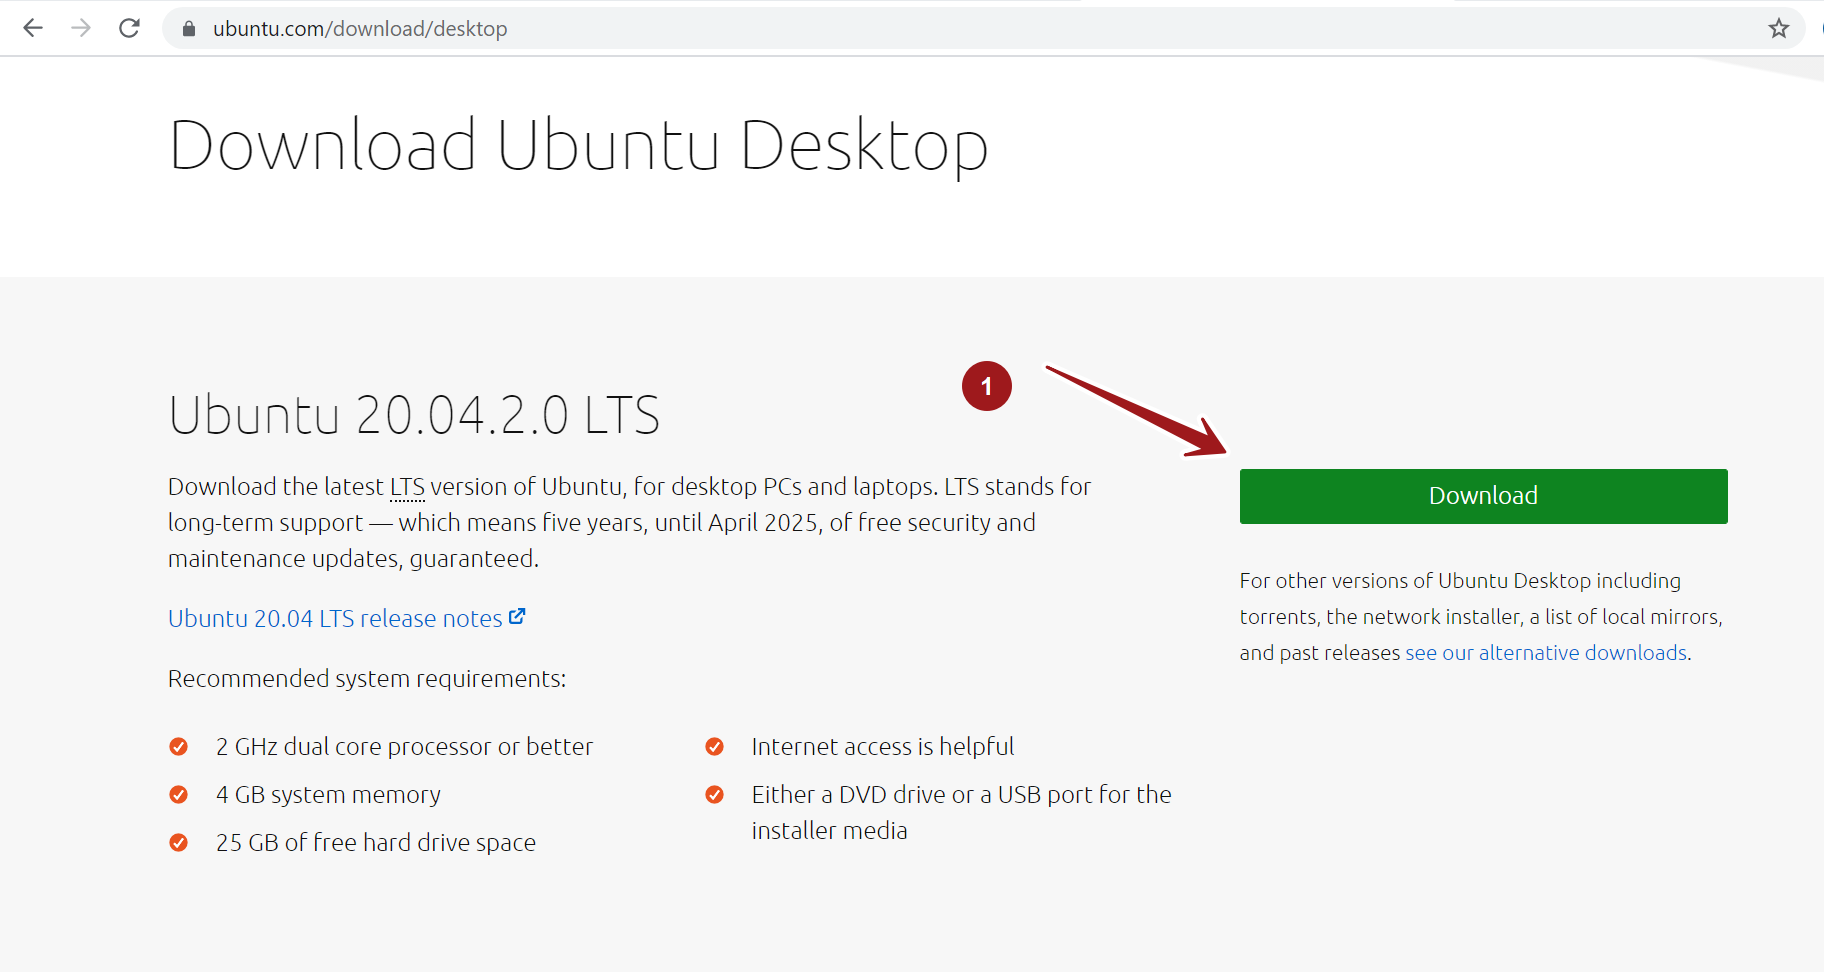 Download Ubuntu Desktop